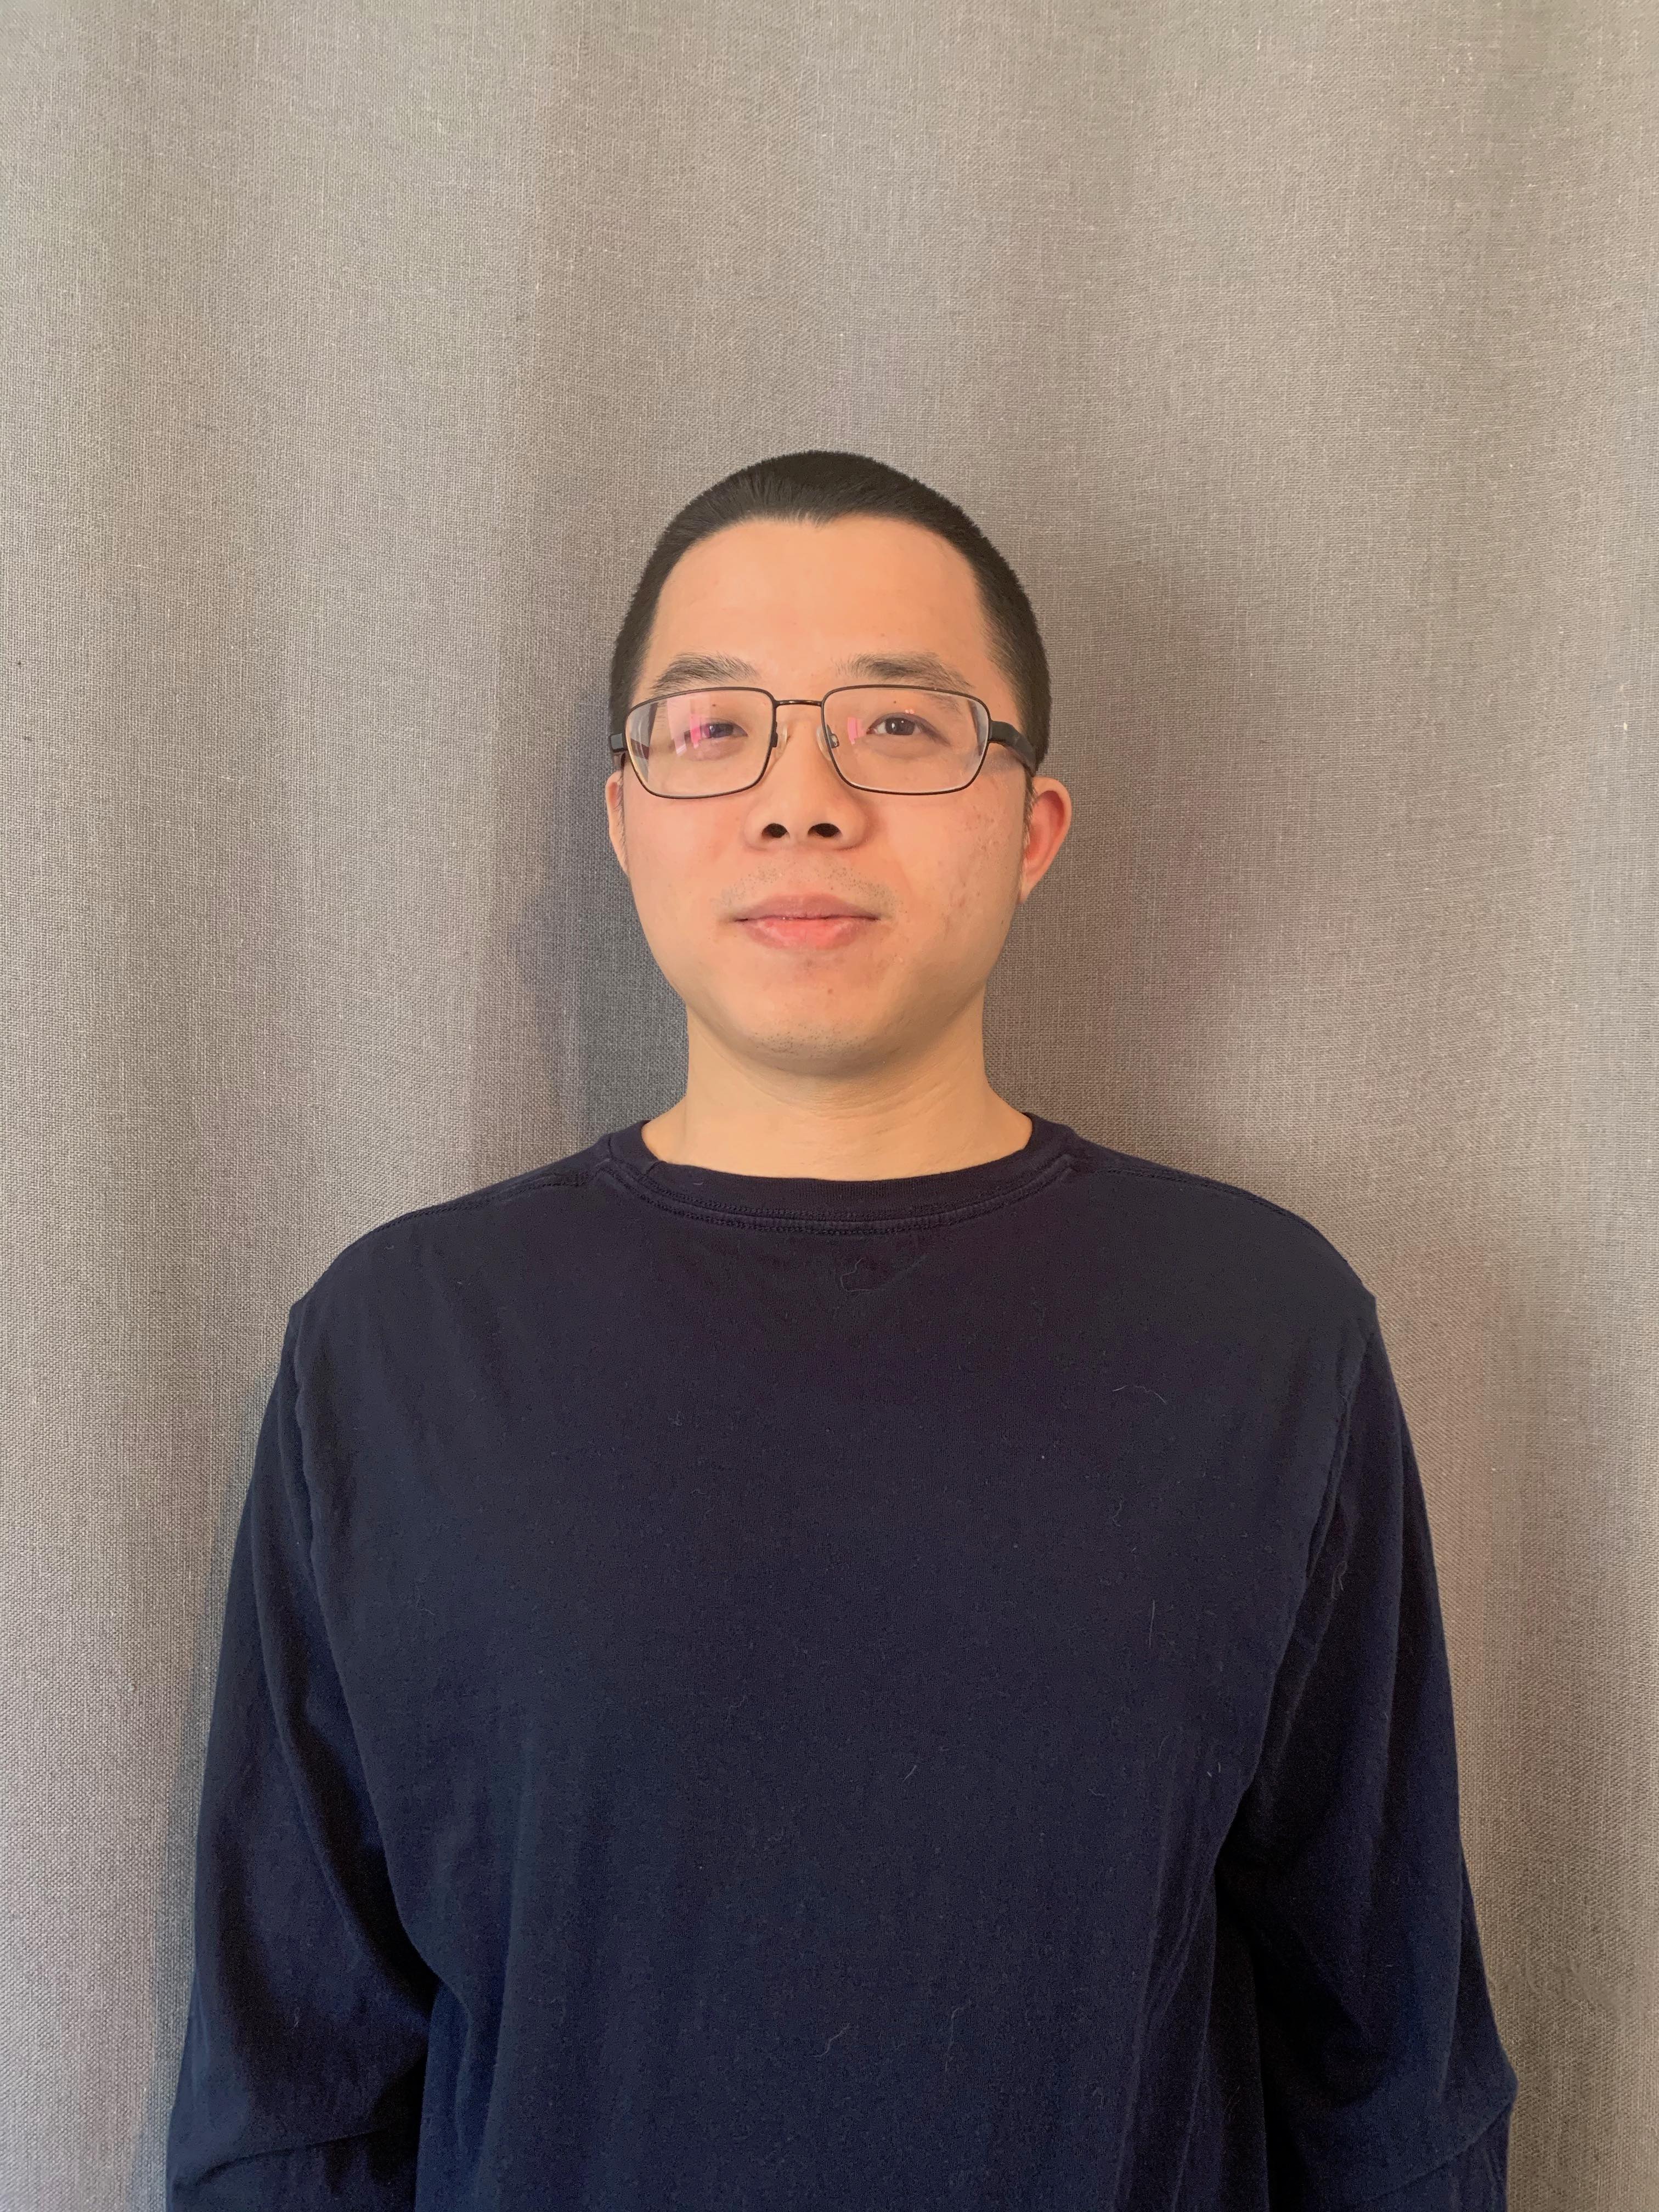 Zhibin Zhang, principal researcher, Unit 42, Palo Alto Networks